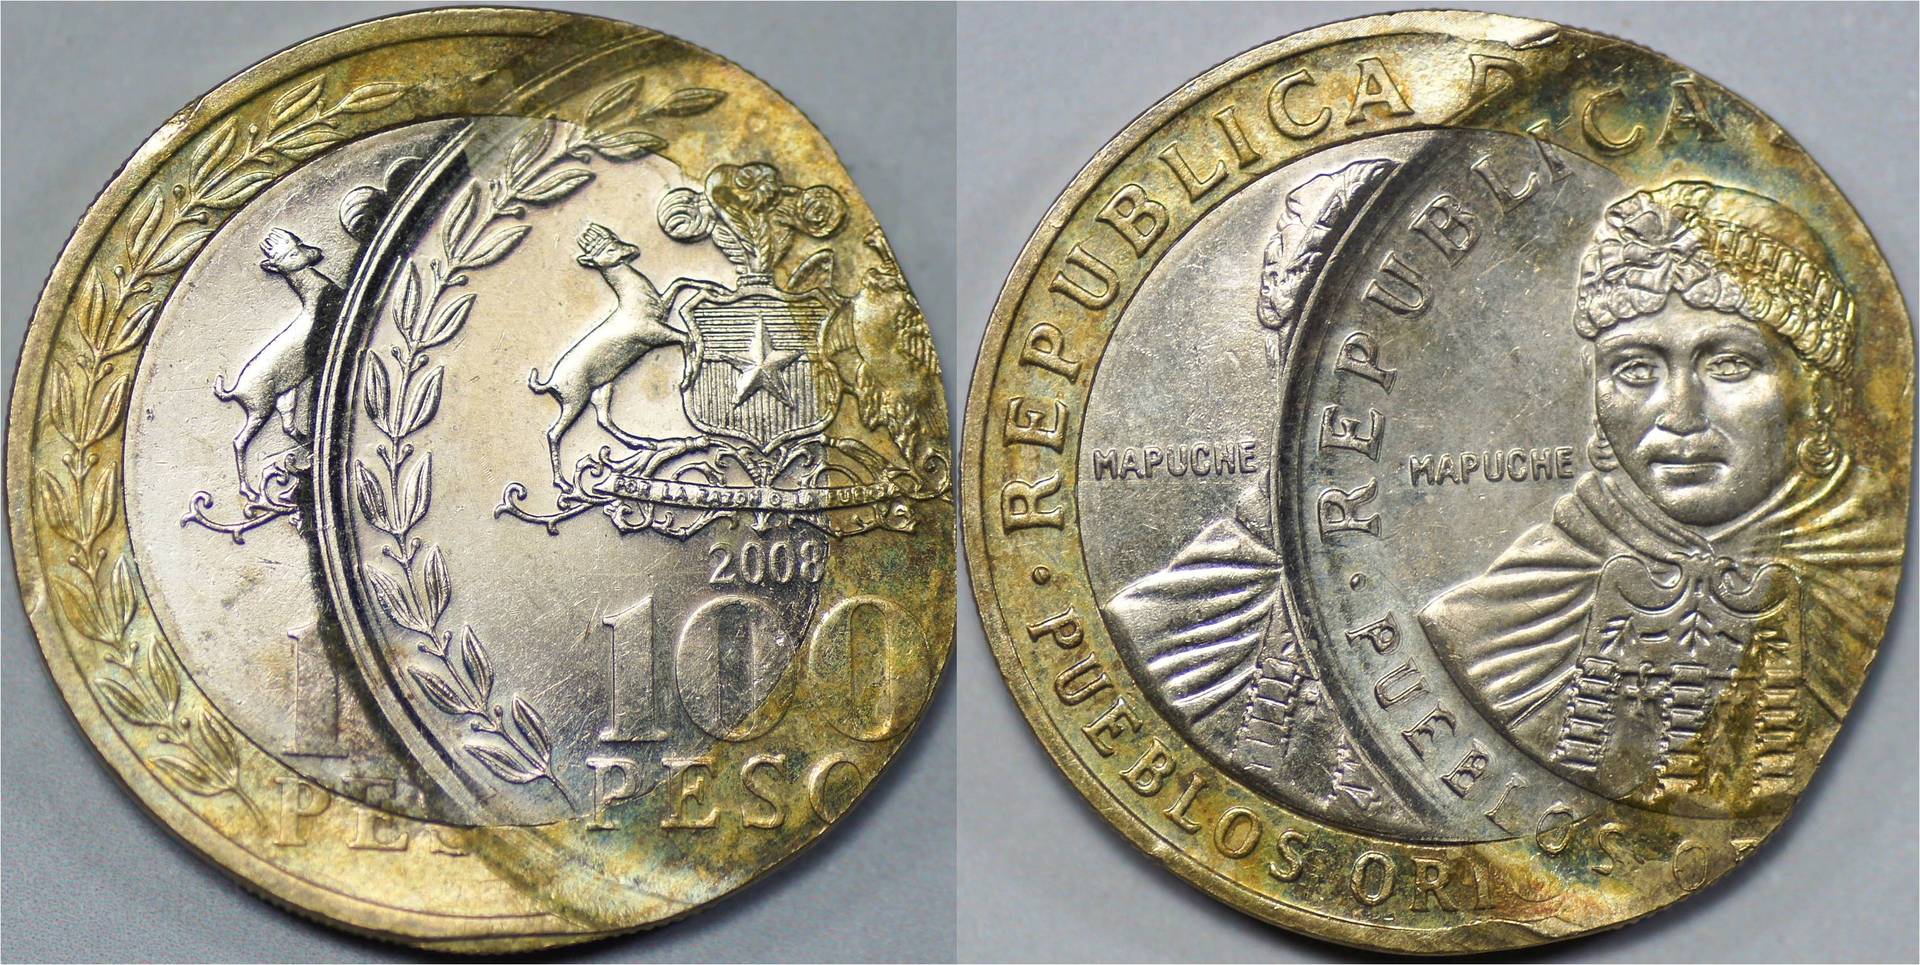 Chile 100 pesos 2008 DS error.jpg